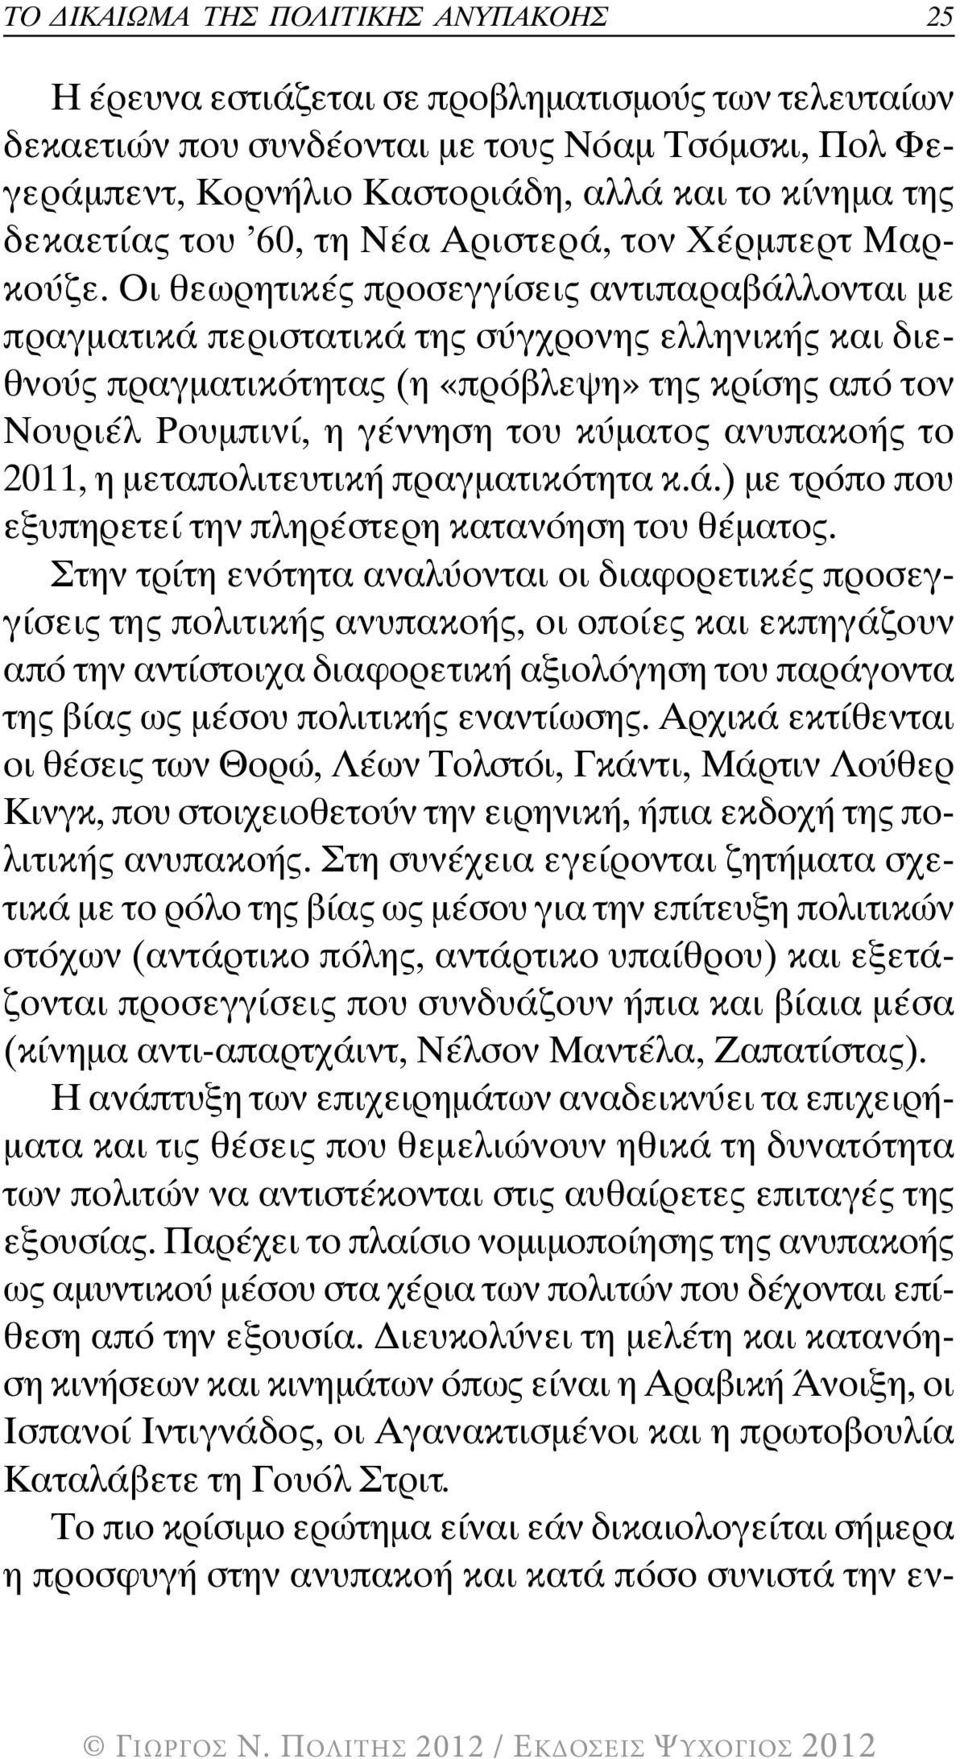 Οι θεωρητικές προσεγγίσεις αντιπαραβάλλονται µε πραγµατικά περιστατικά της σύγχρονης ελληνικής και διεθνούς πραγµατικότητας (η «πρόβλεψη» της κρίσης από τον Νουριέλ Ρουµπινί, η γέννηση του κύµατος